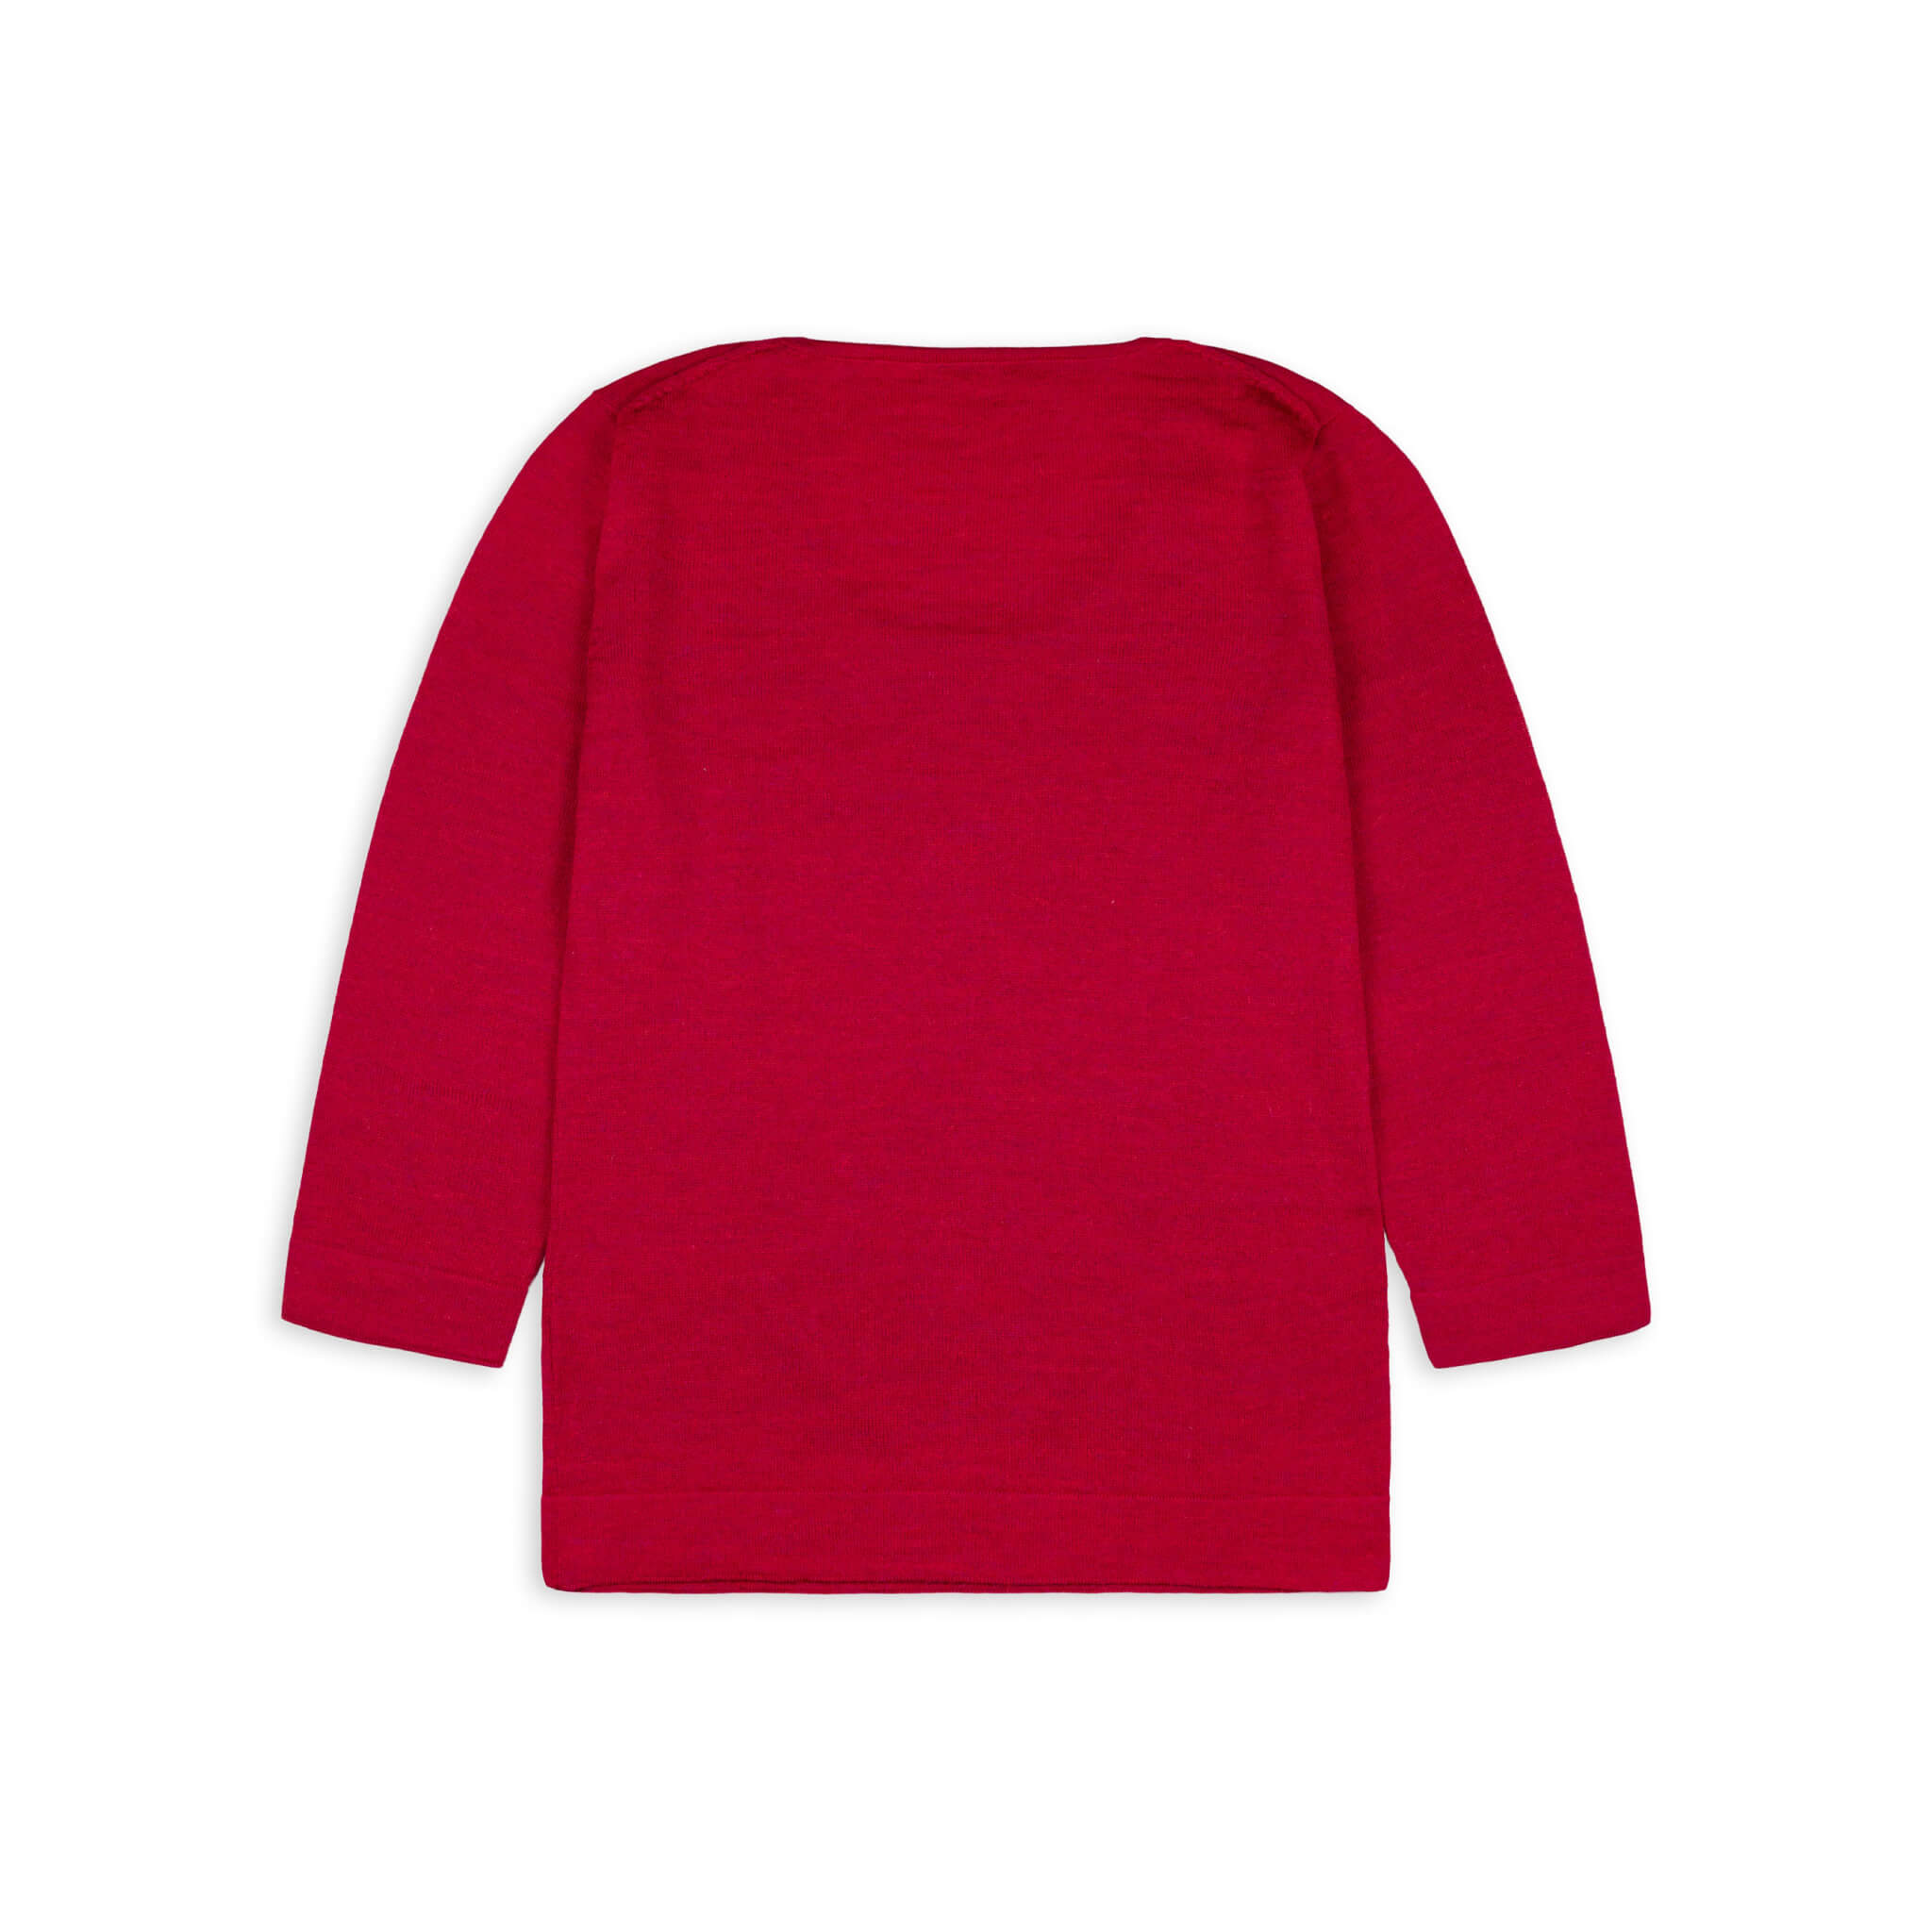 UNA Alpaka Pullover für Damen von Alpakin in rot von hinten